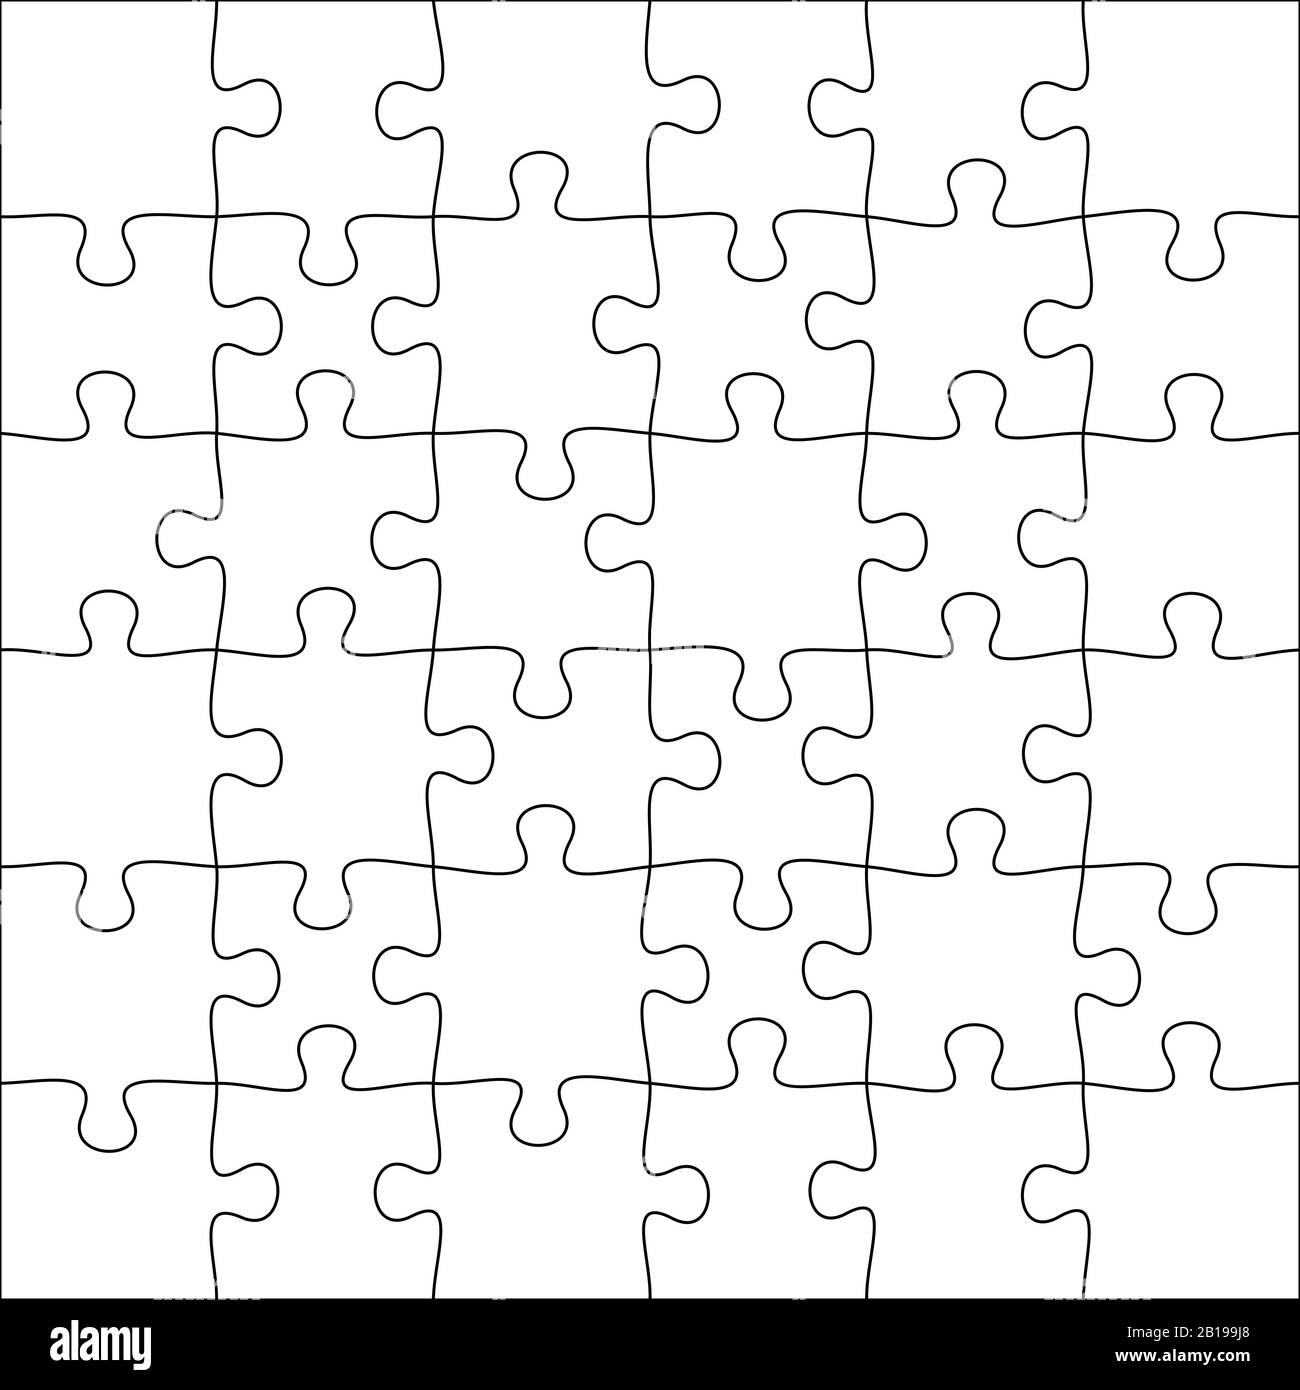 Puzzles. Quadraträtsel 6x6 Raster, Puzzle Spiel und verbinden 36 Bildteile Vektorgrafiken Stock Vektor